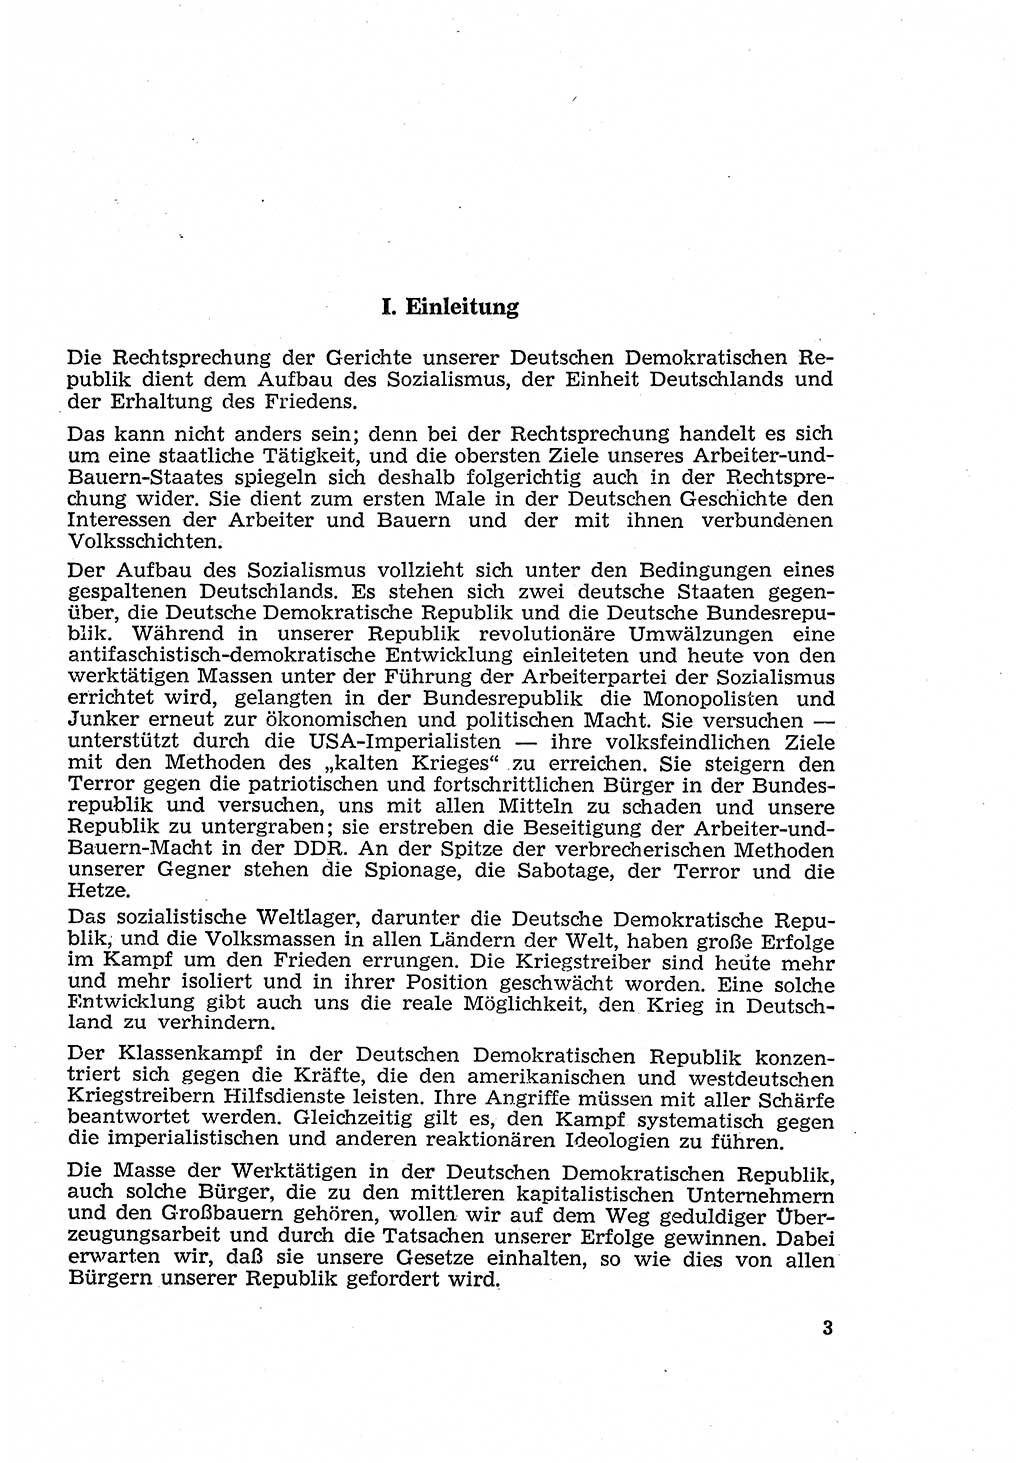 Strafverfahren in der Deutschen Demokratischen Republik (DDR) und seine demokratischen Prinzipien 1956, Seite 3 (Str.-Verf. DDR 1956, S. 3)